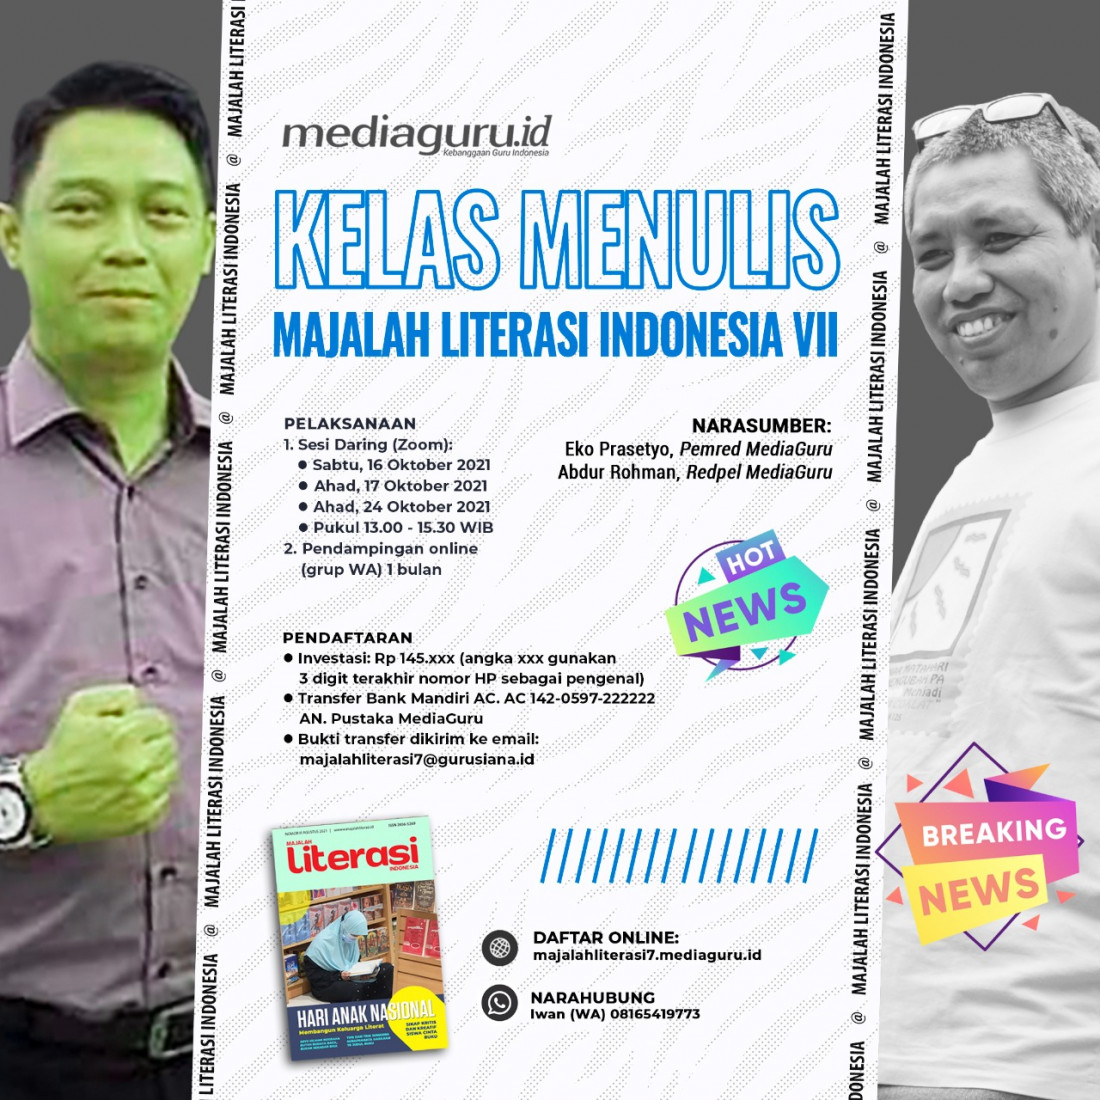 Kelas Menulis Majalah Literasi Indonesia VII (16 - 24 Oktober 2021)